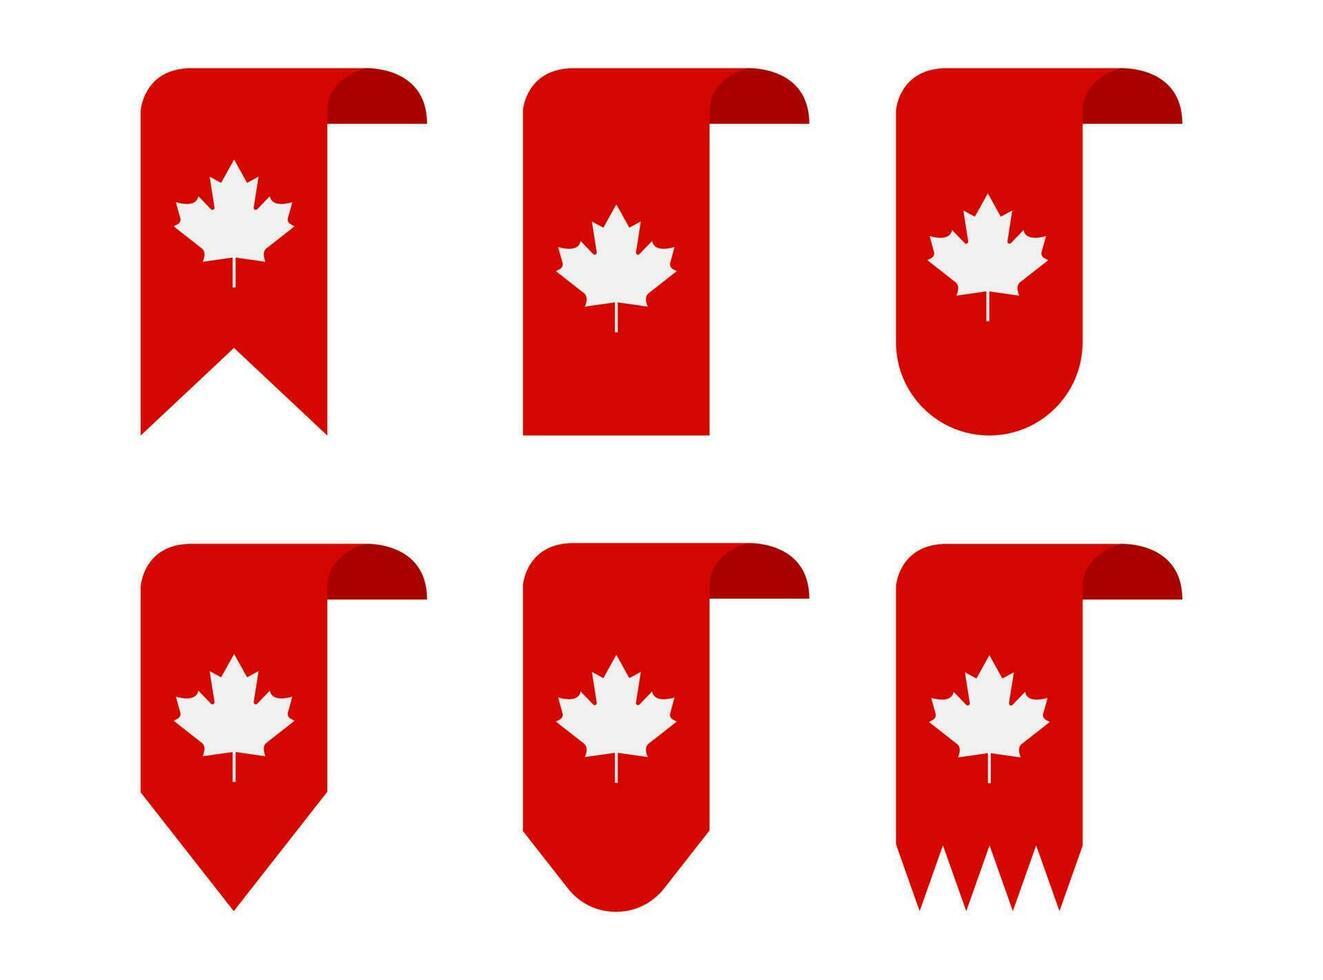 Kanada Tag, Kanada Land Flagge und Symbole National Kanada Tag Hintergrund Feuerwerk vektor